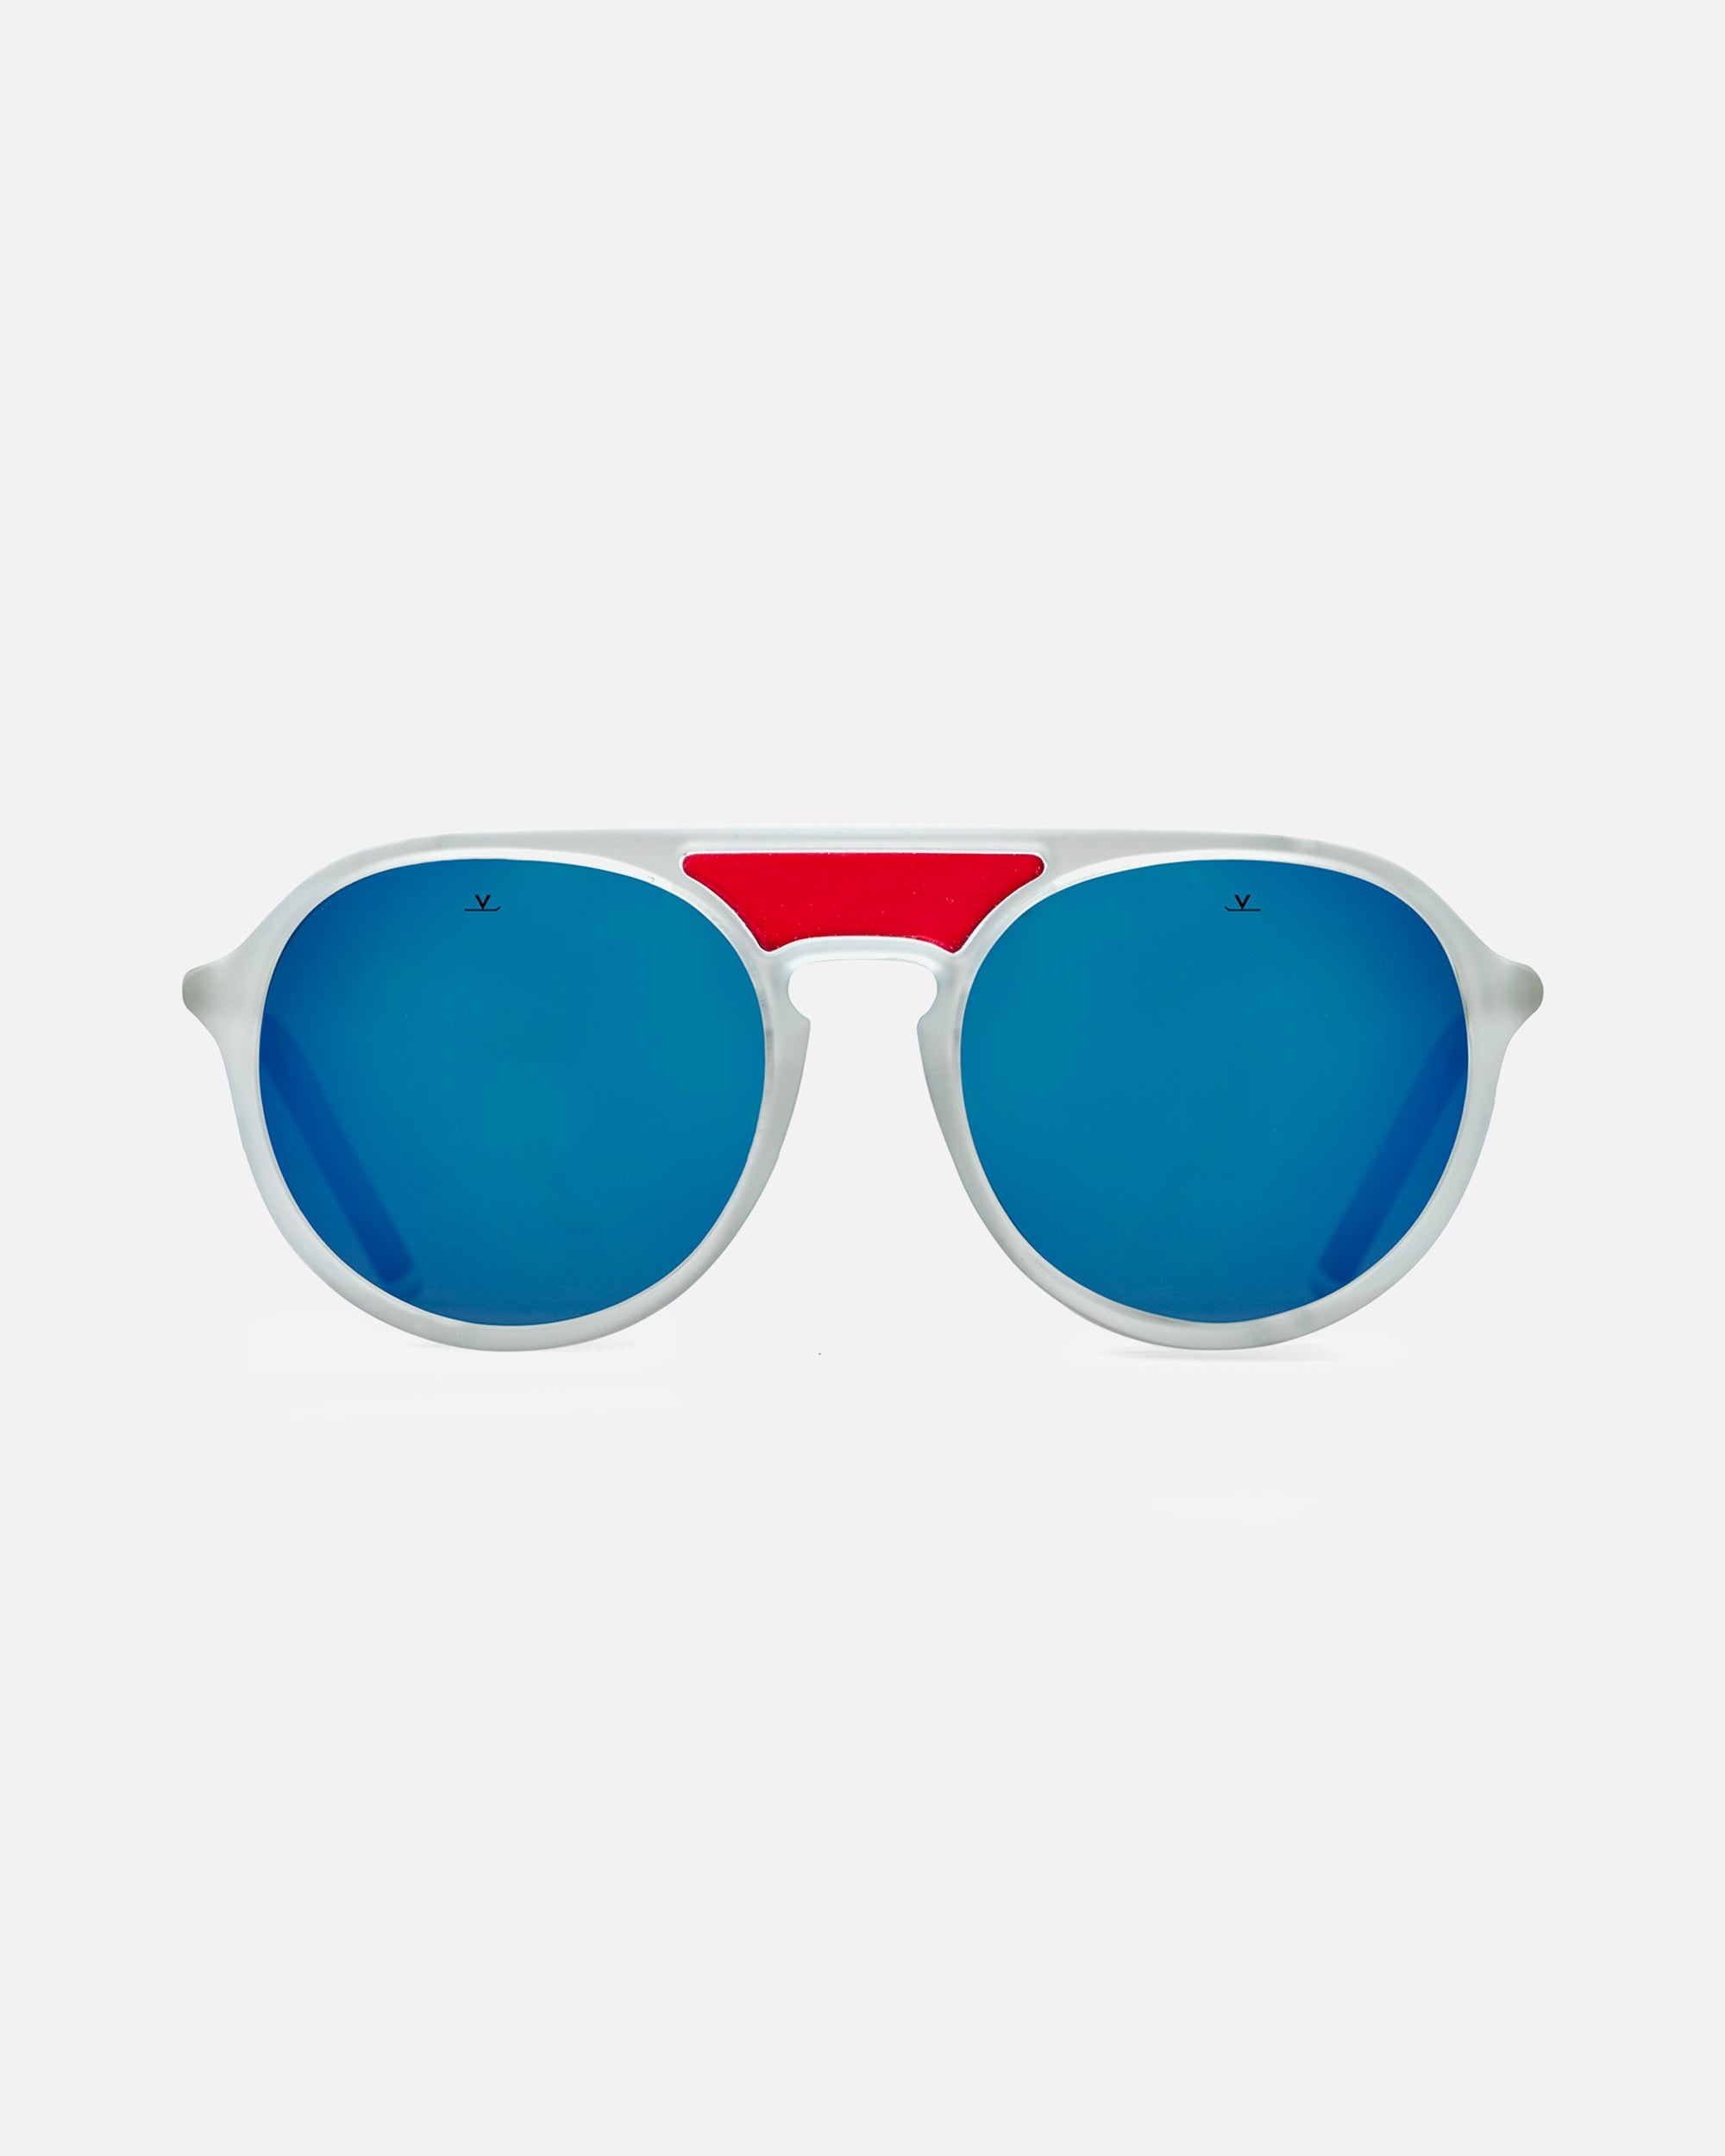 Finnegan Sunglasses Men Steampunk Goggles Women Retro Shades – Technigadgets